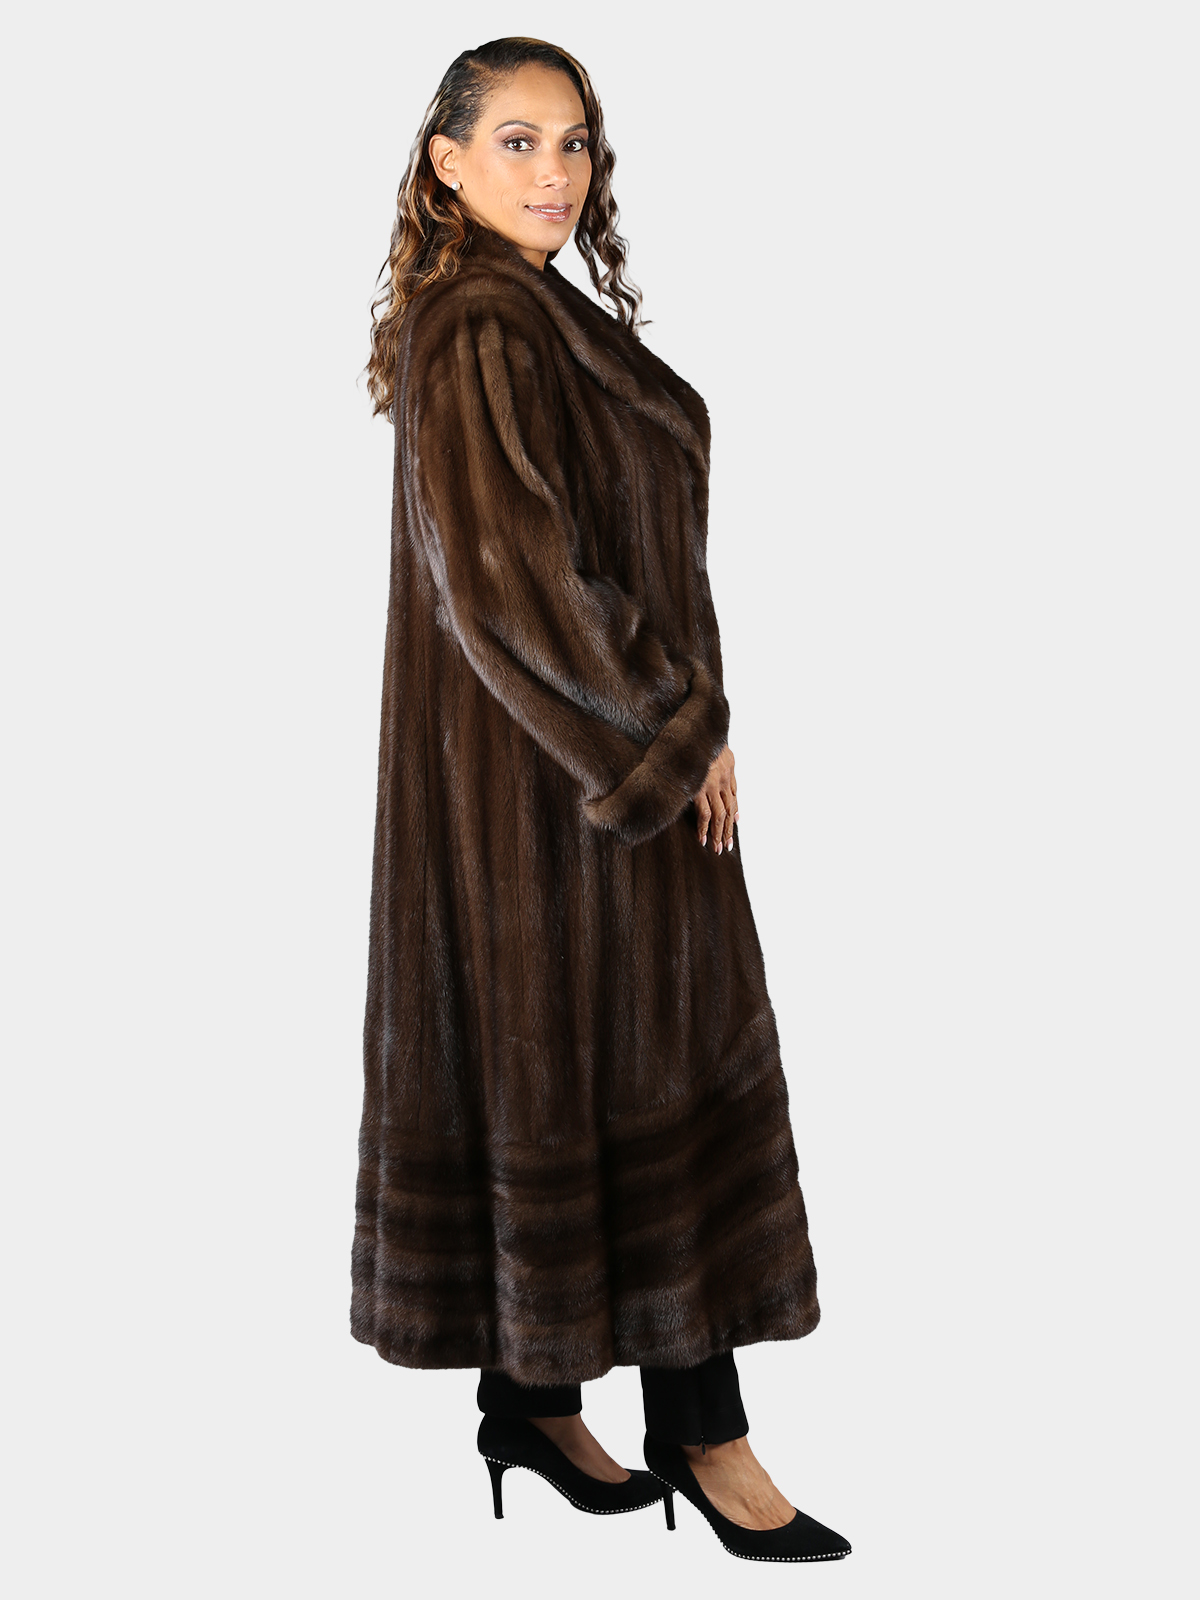 Woman's Natural Mahogany Female Mink Fur Coat - Estate Furs